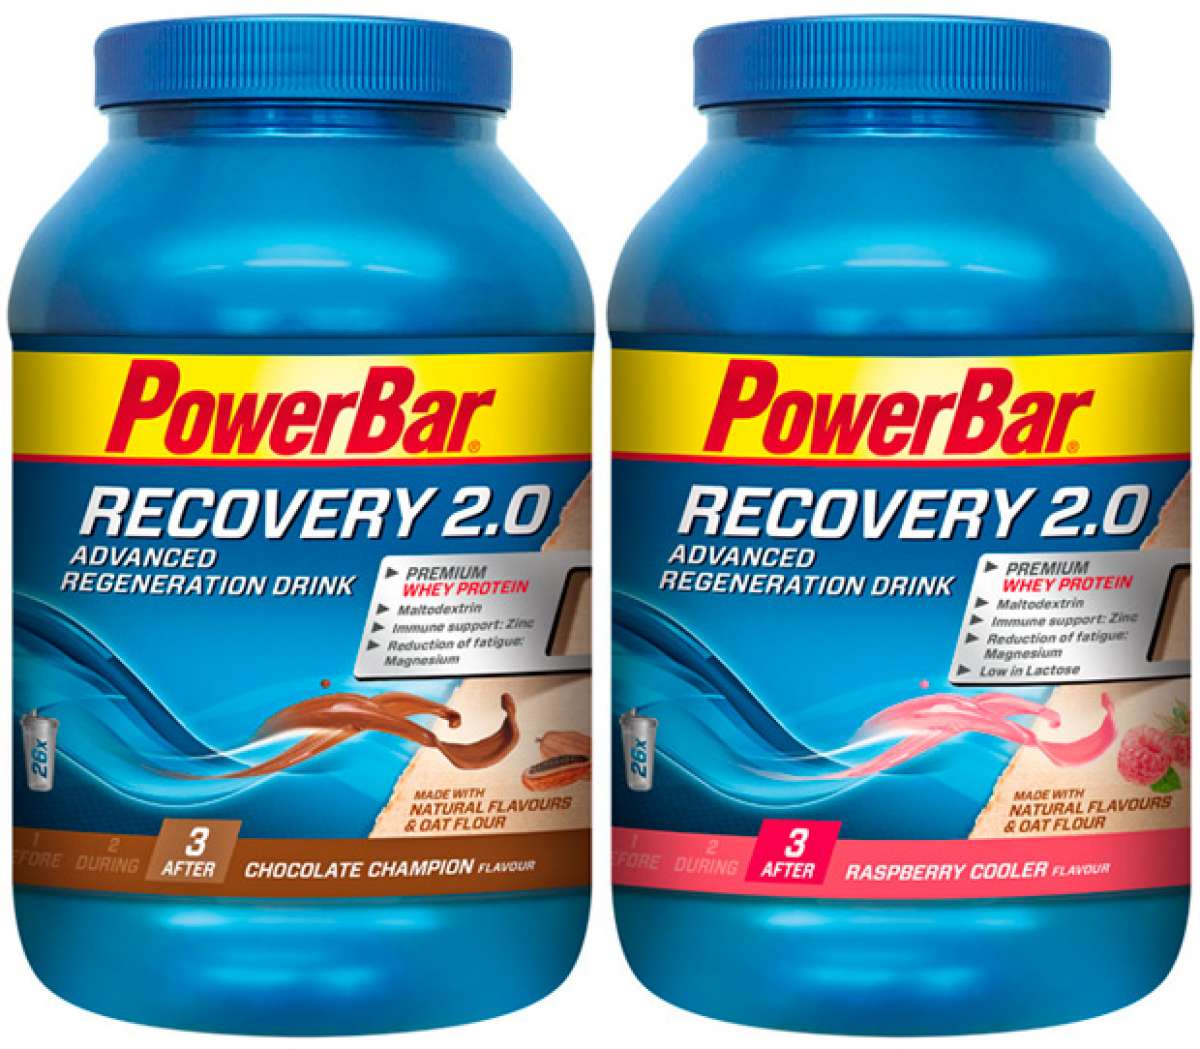 PowerBar Recovery 2.0, nueva fórmula para la bebida de recuperación de la firma